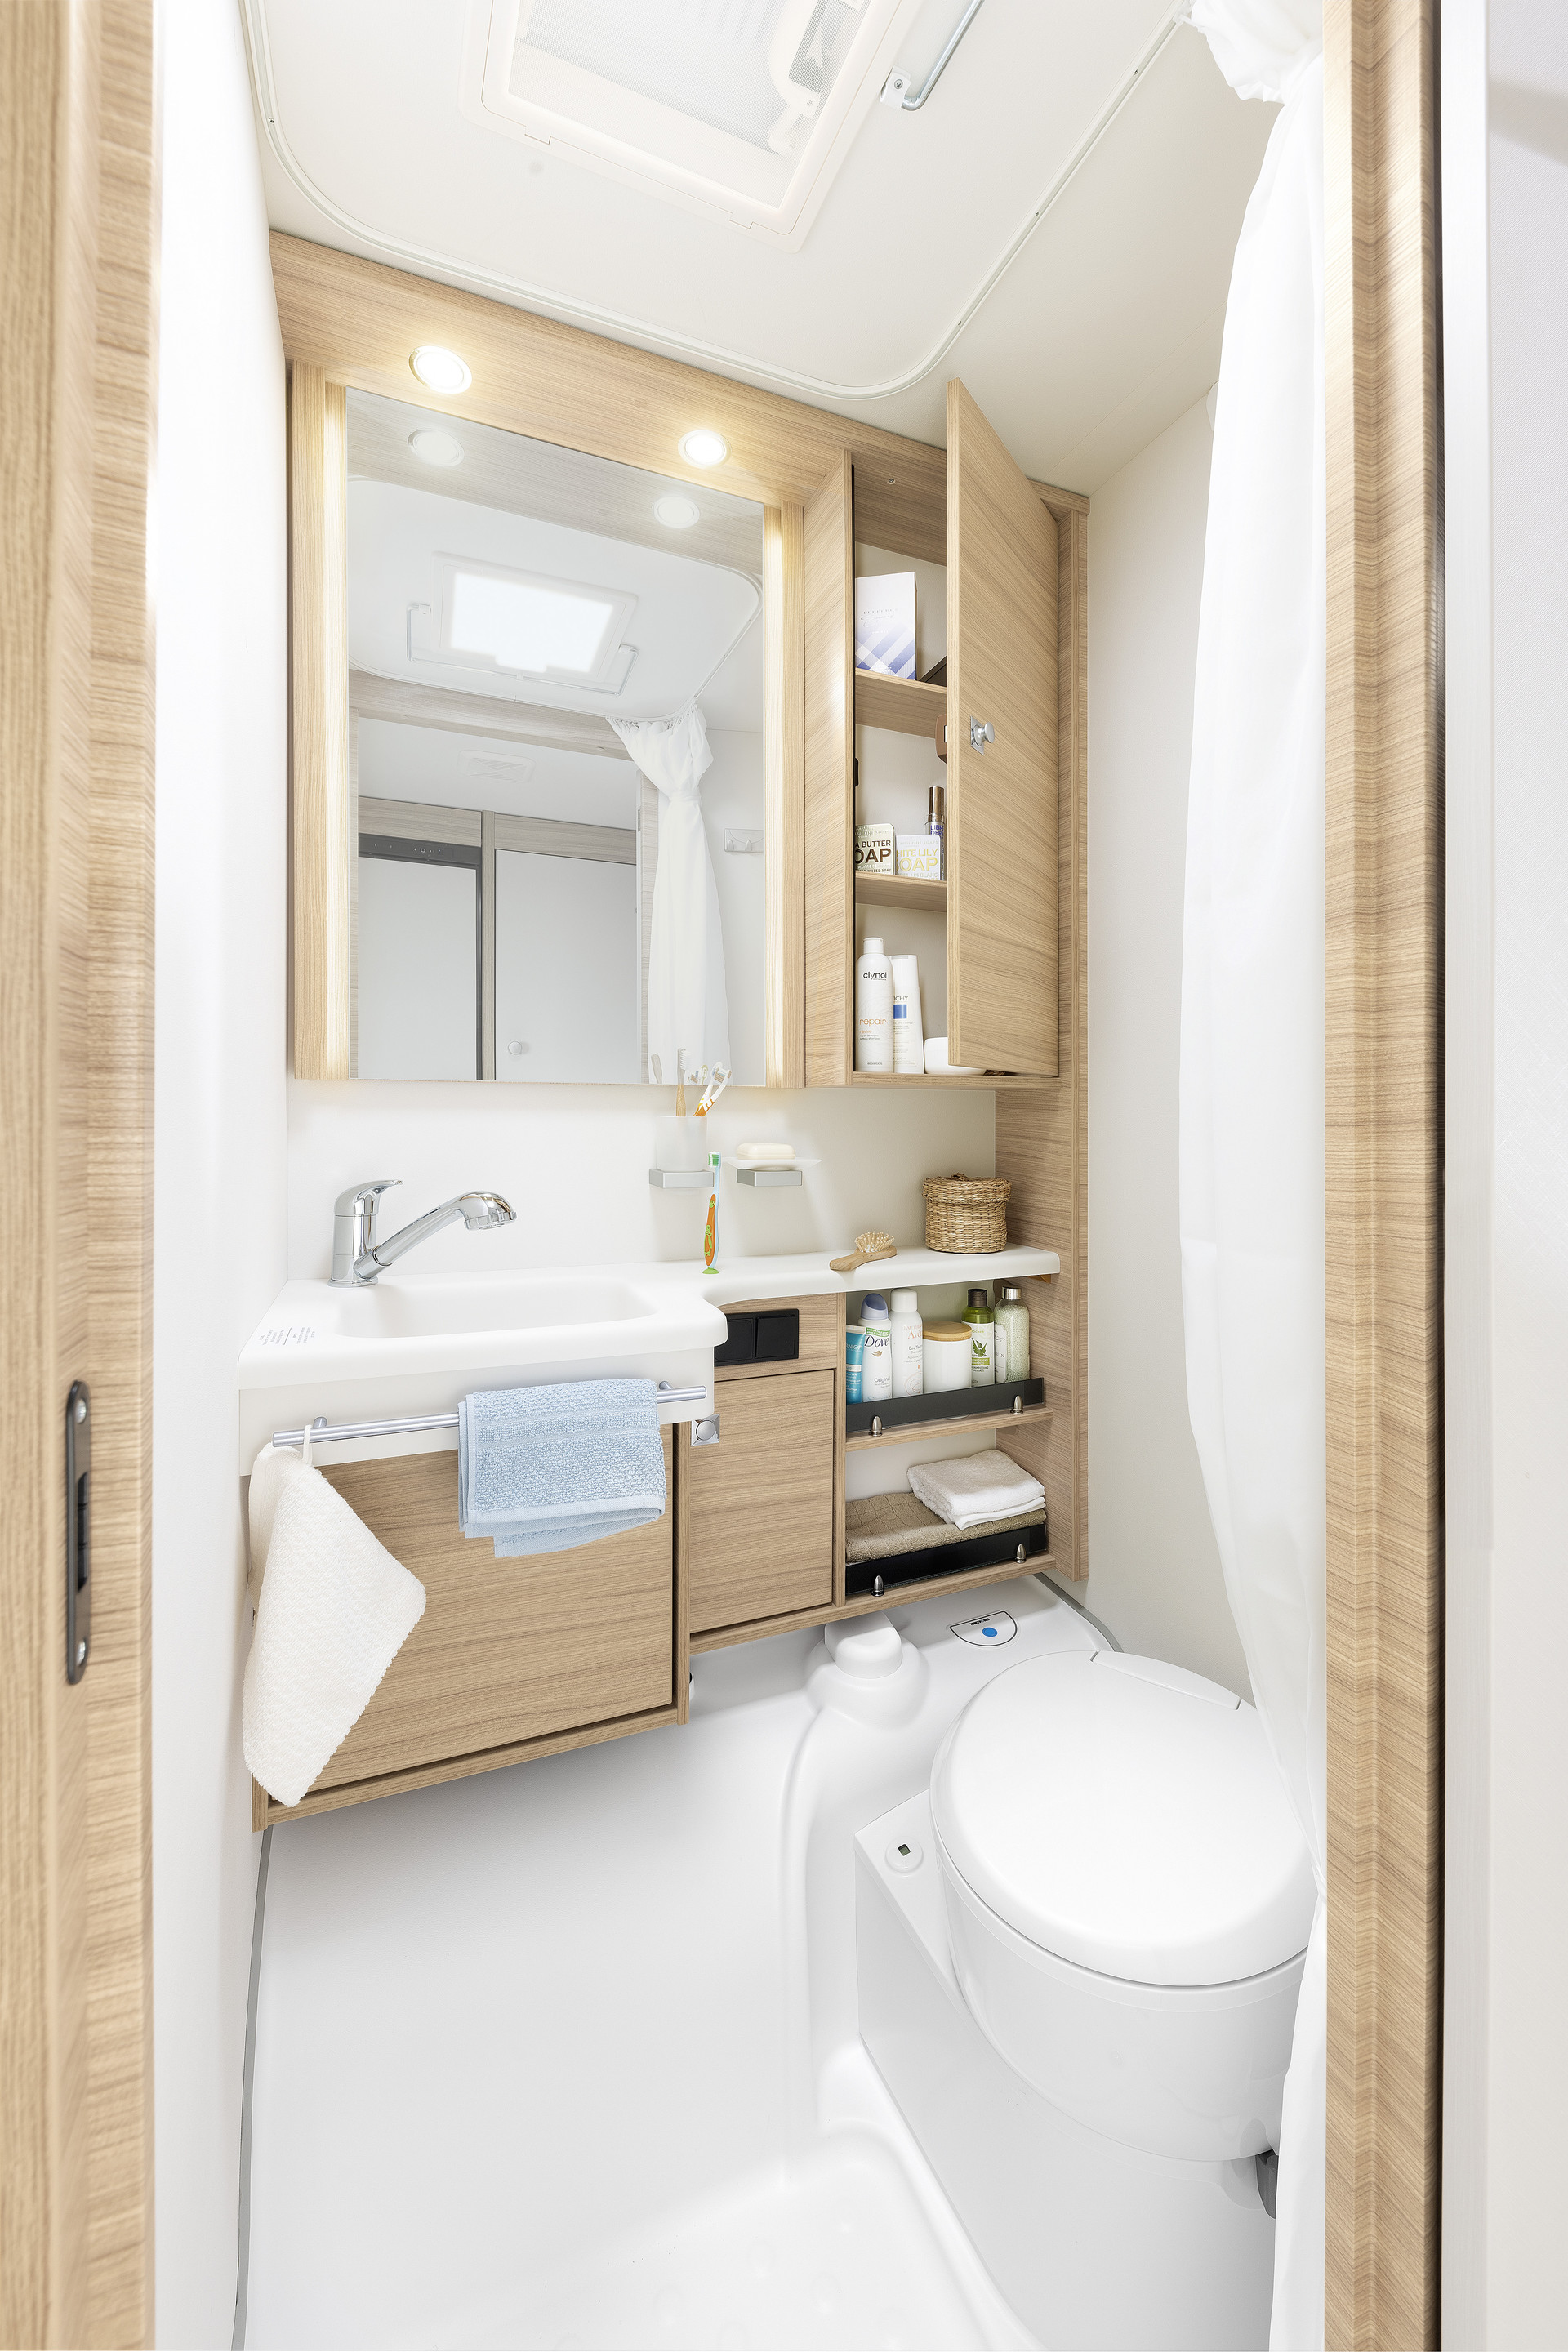 Kompaktowa łazienka w modelu Camper® oferuje wszystko, co potrzebne do zachowania świeżości podczas urlopu • 550 ESK | Mount